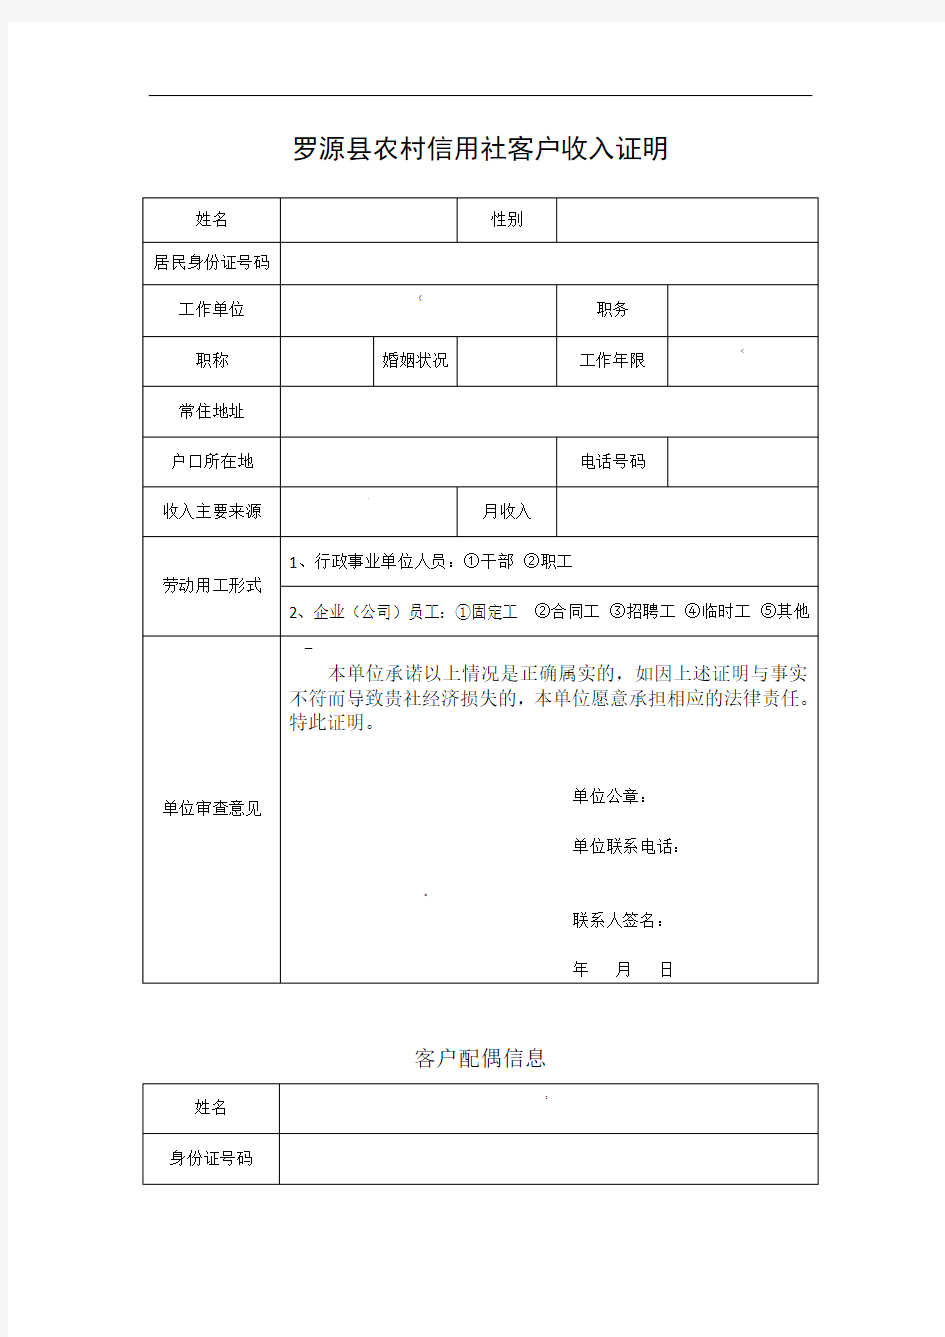 罗源县农村信用社客户收入证明